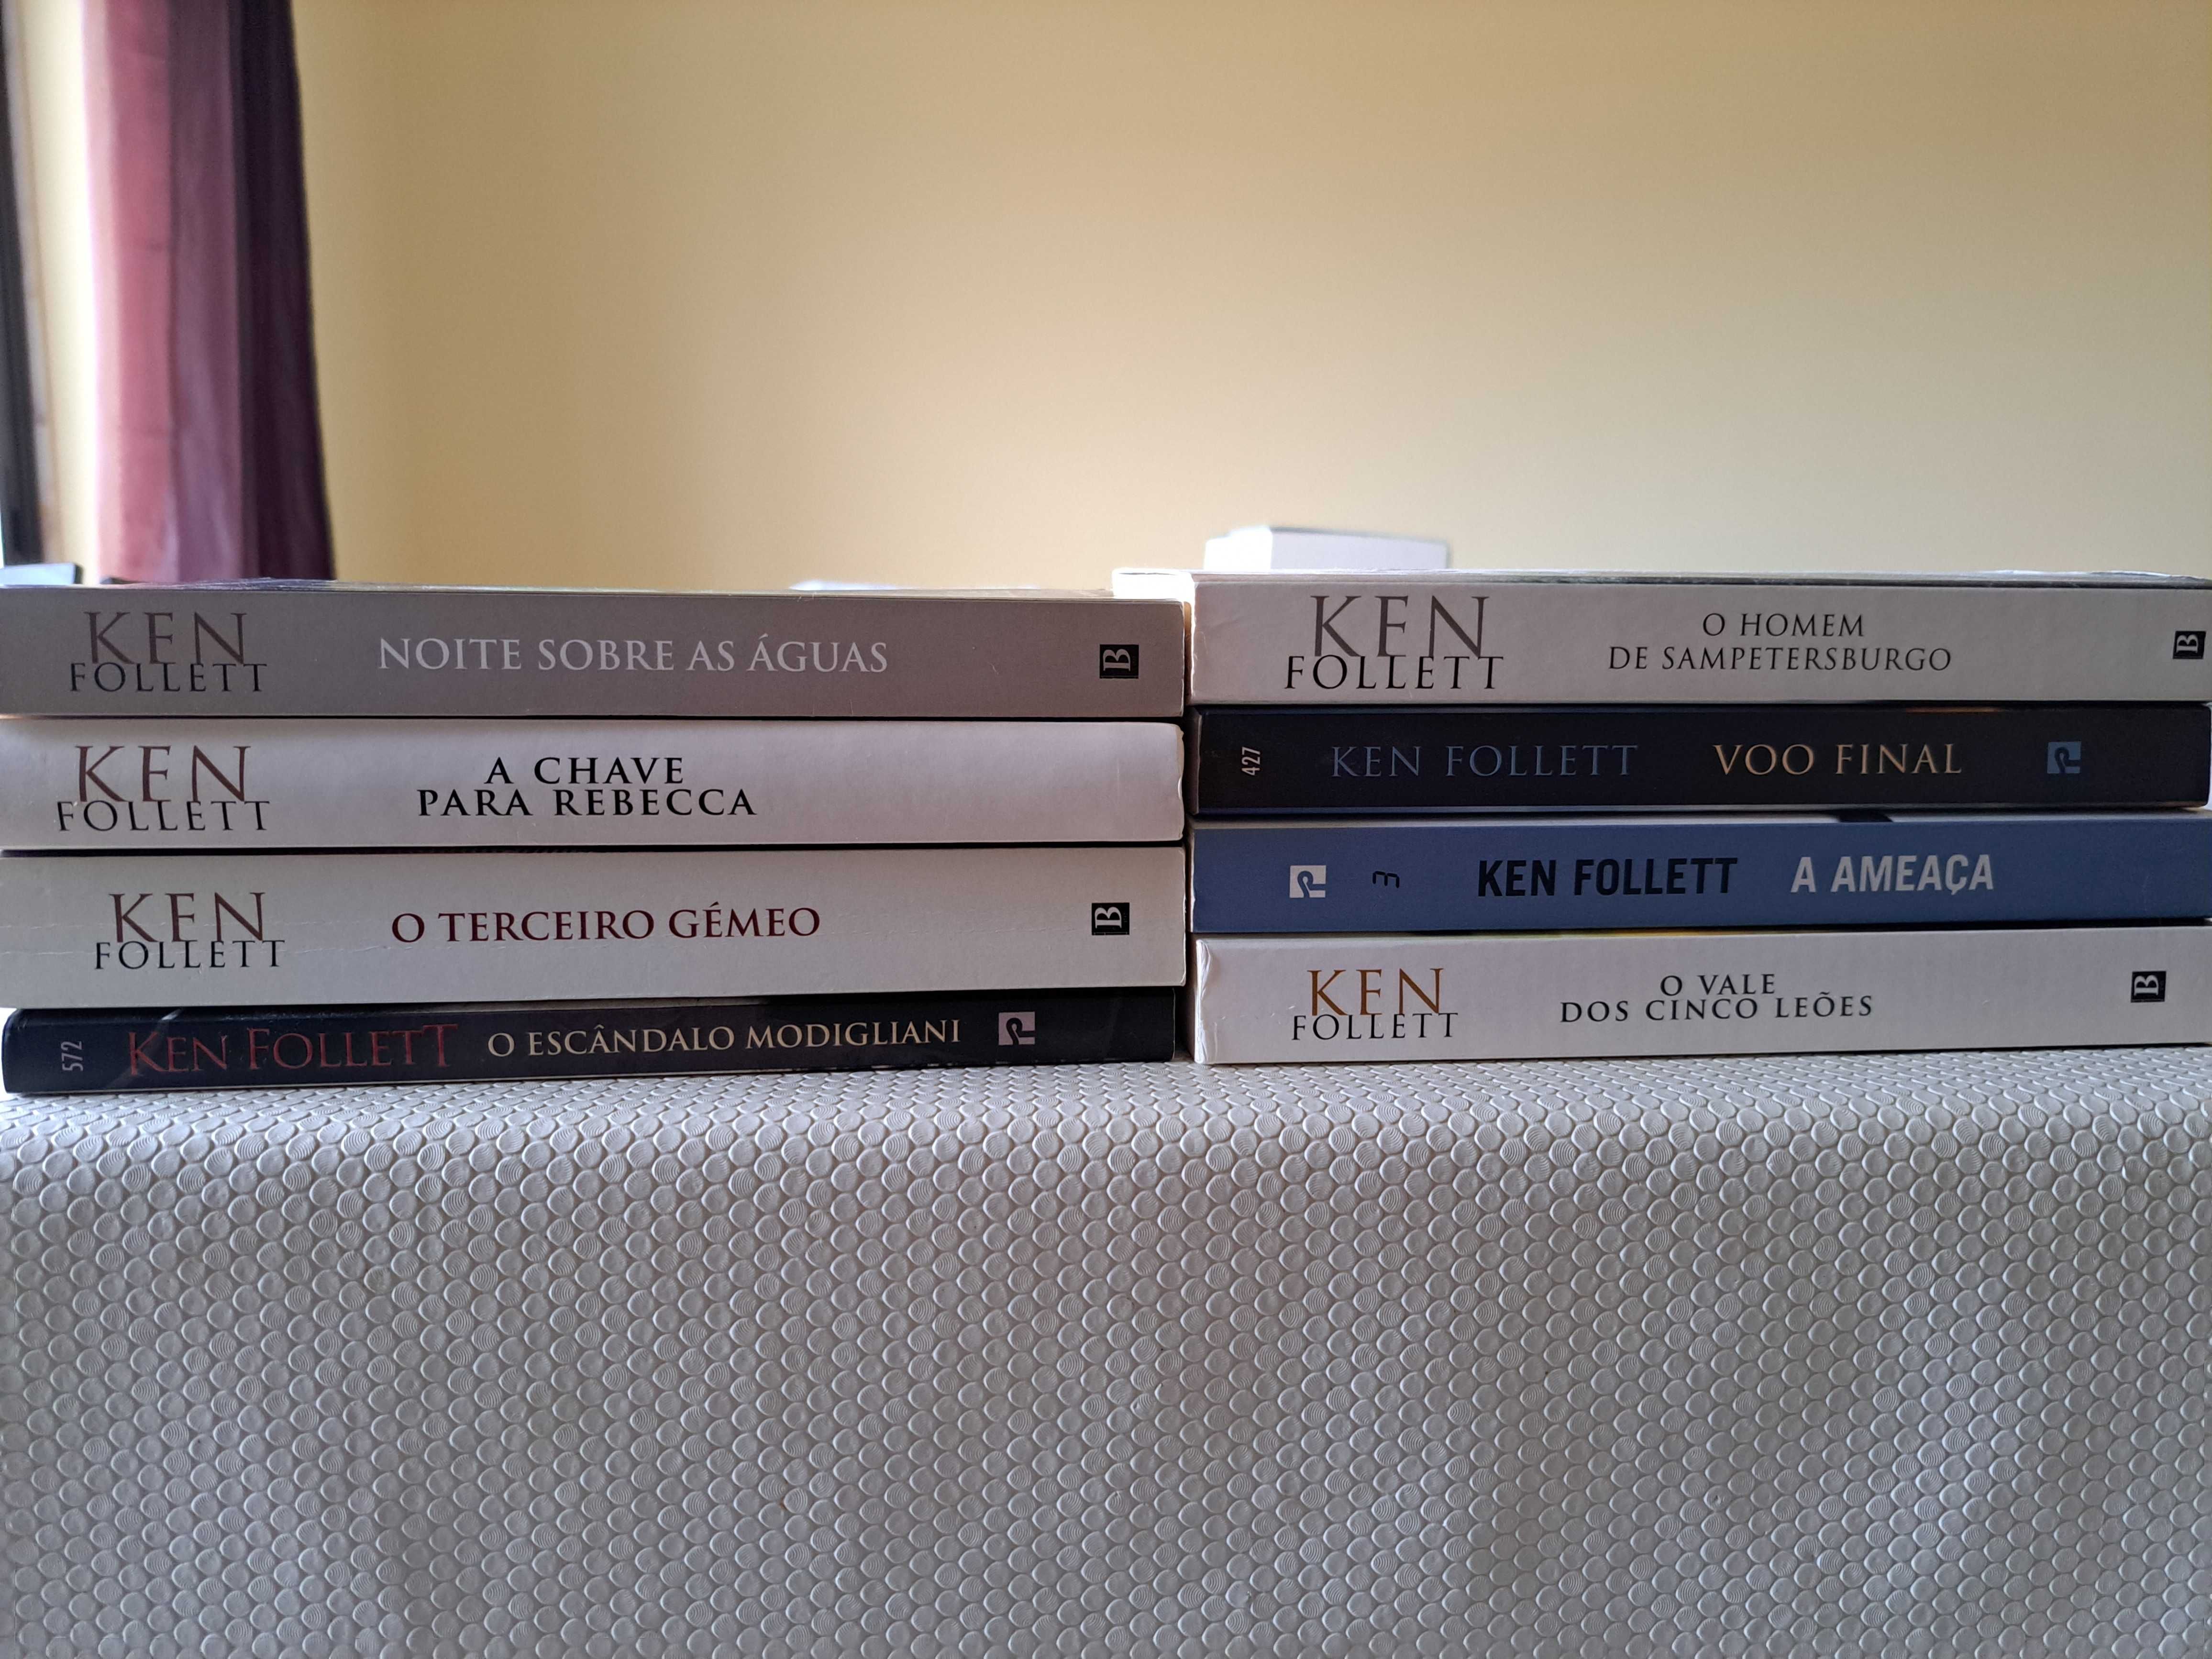 Ken Follett - Varios livros do autor